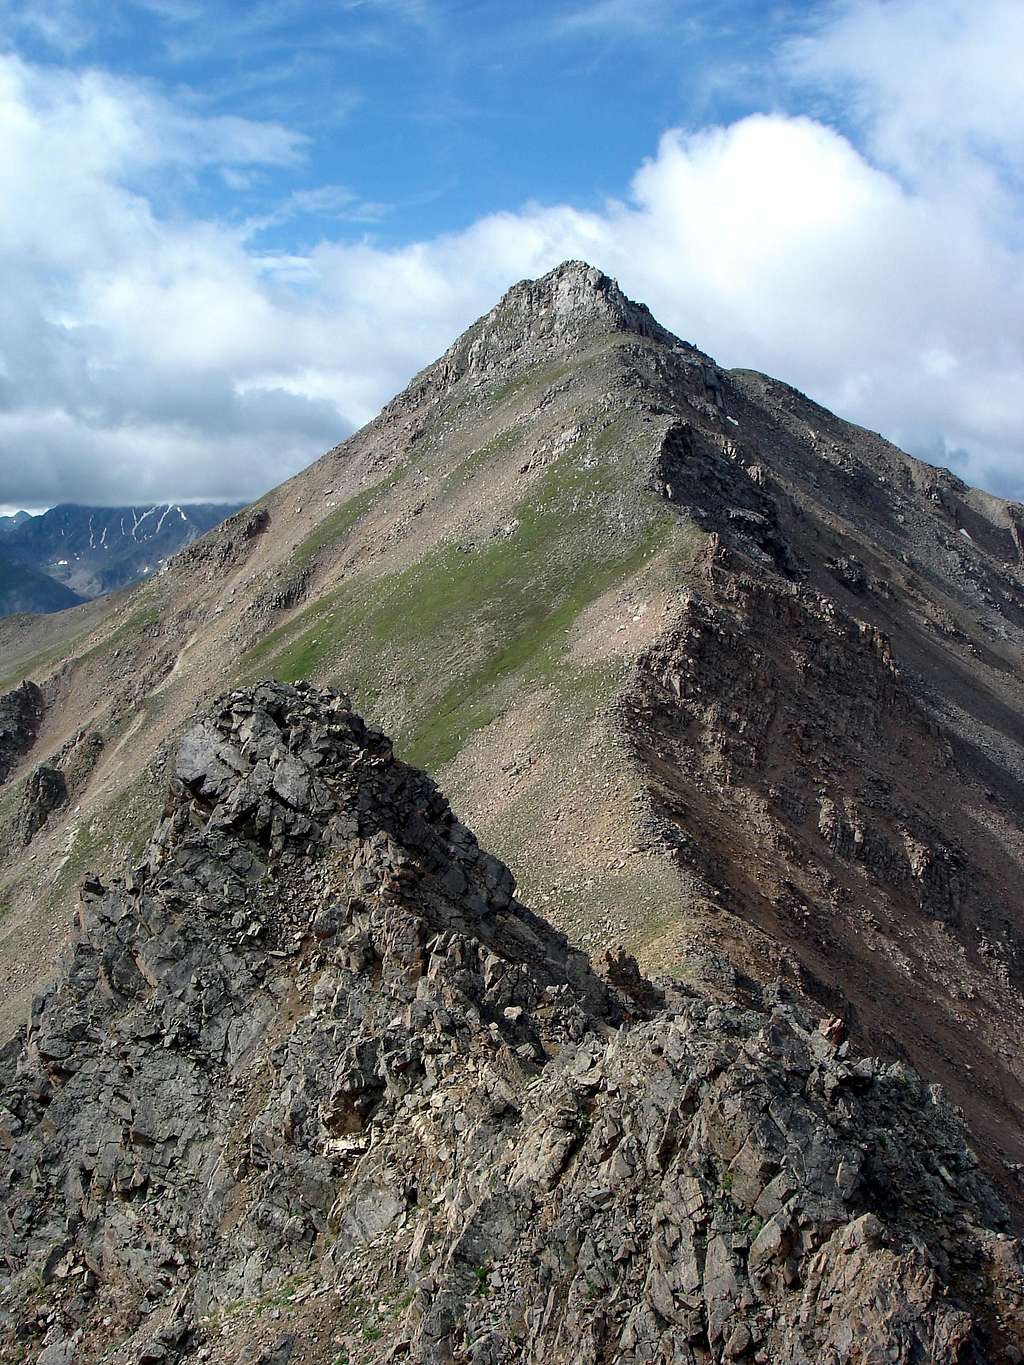 North ridge of Casco Peak